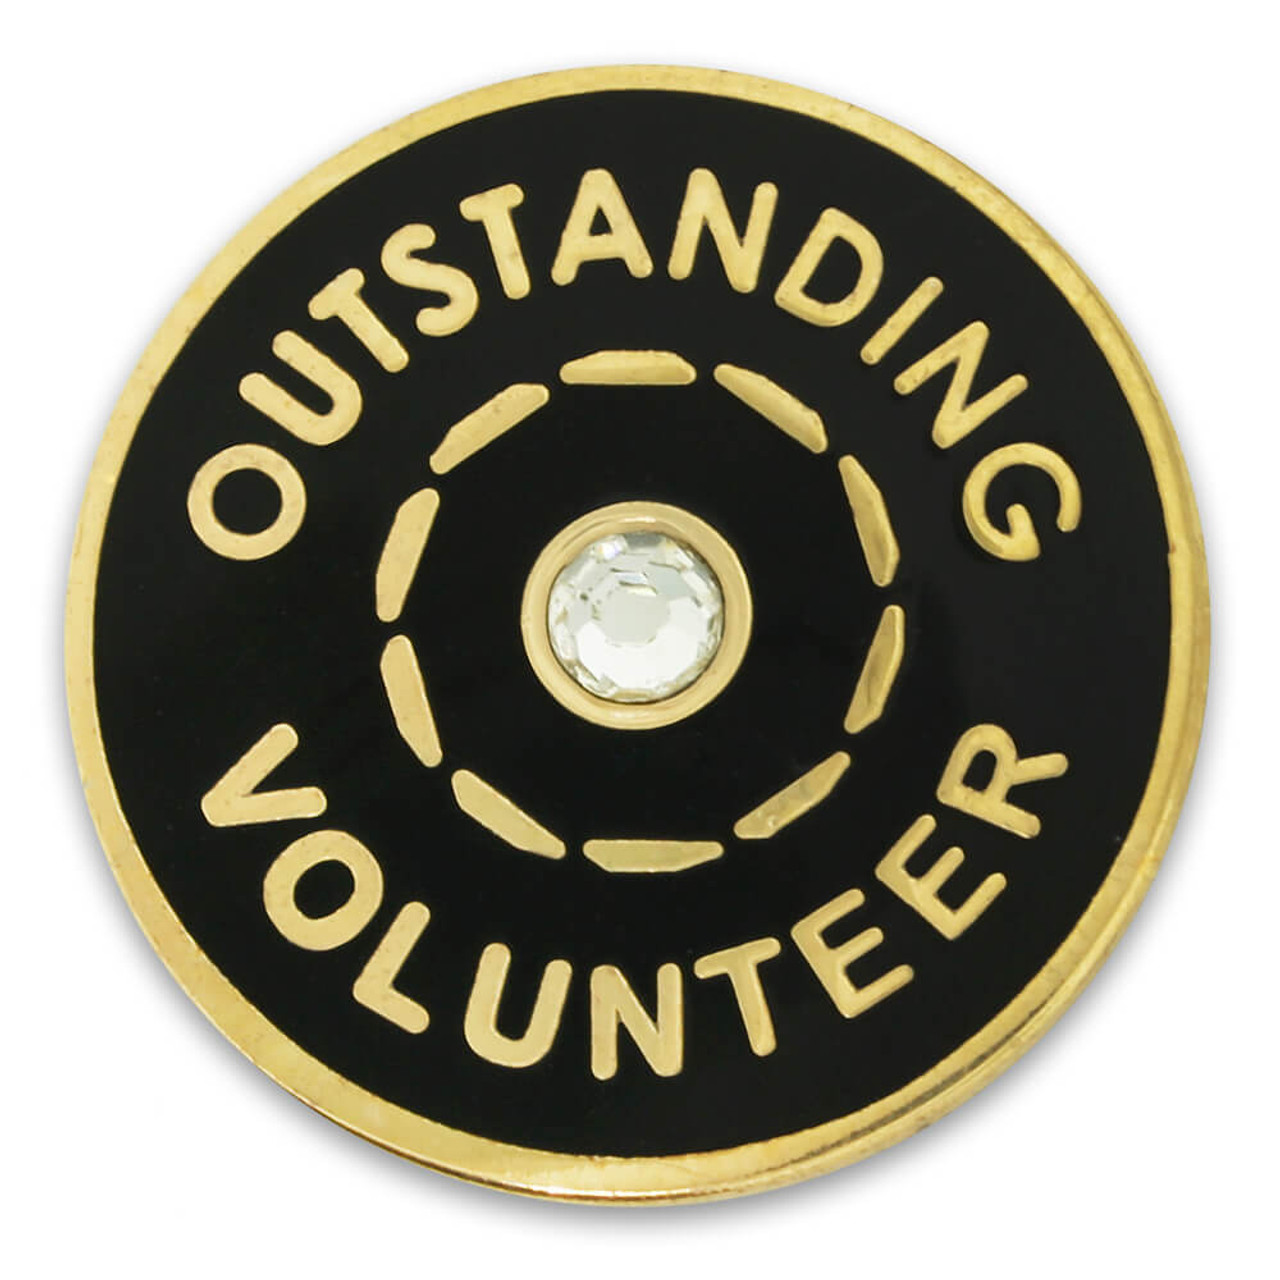 PinMart Pinmart's Silver Plated Rhinestone Volunteer Brooch Pin